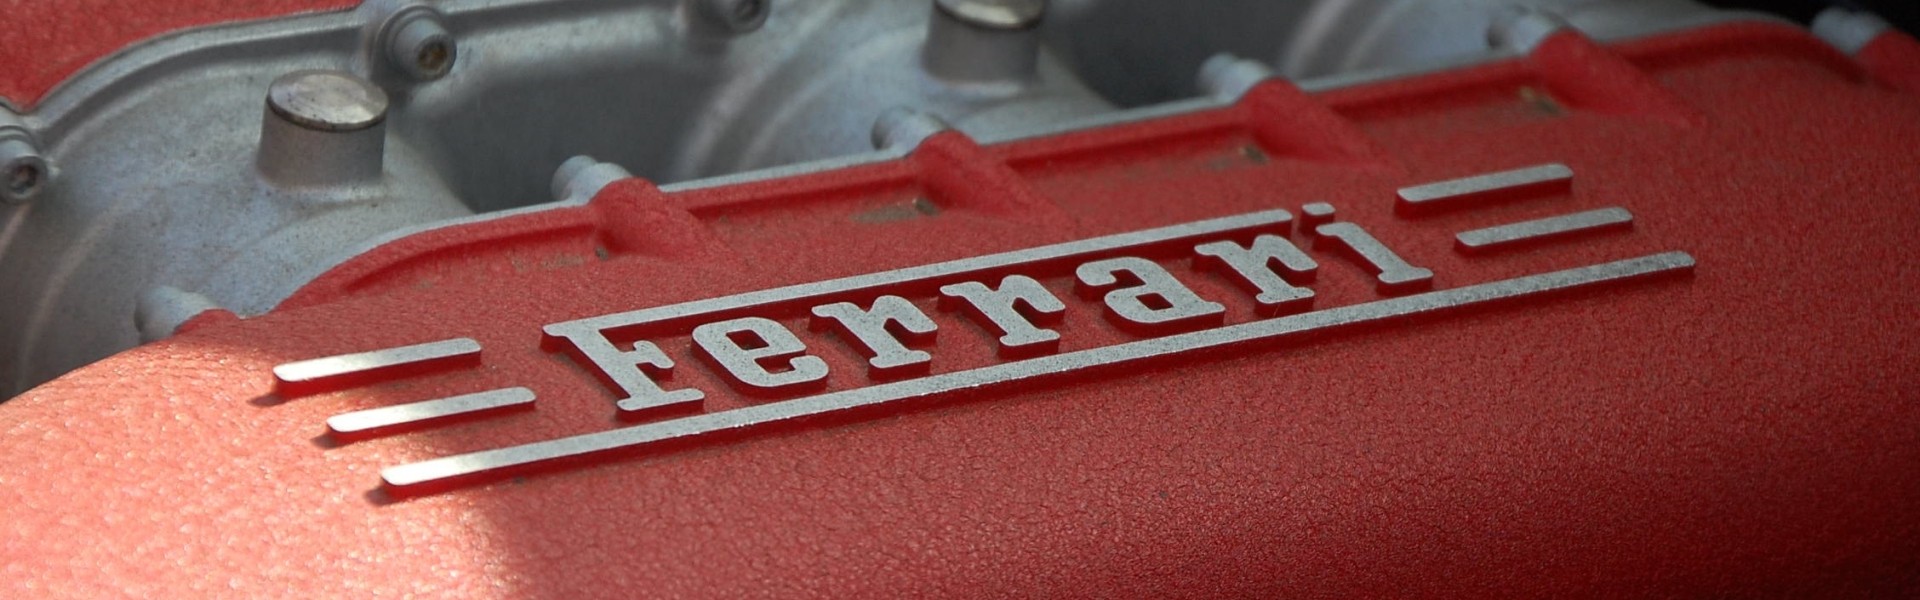 Ferrari trademark